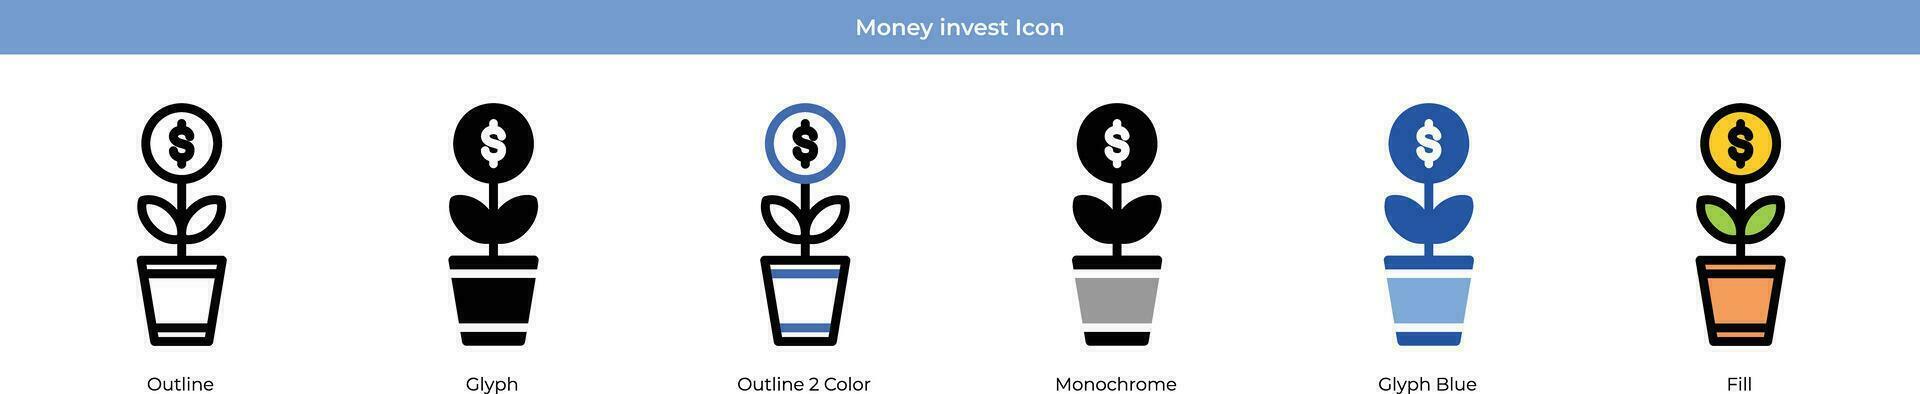 Geld investieren Symbol einstellen vektor